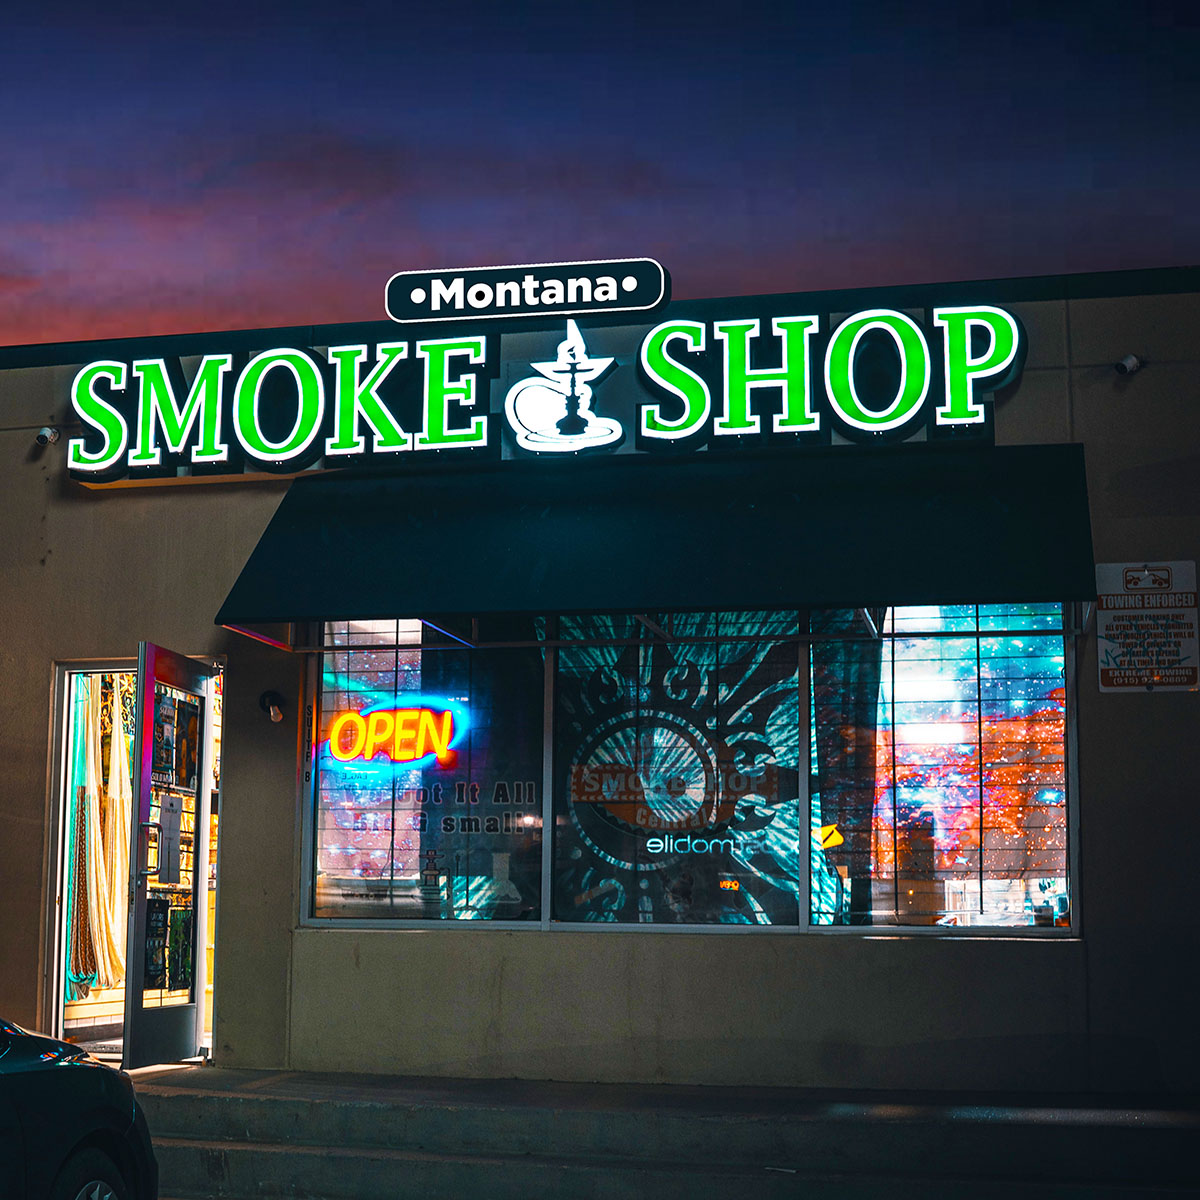 Montana Smoke Shop - 4323 Montana Ave B, El Paso, TX 79903 near me